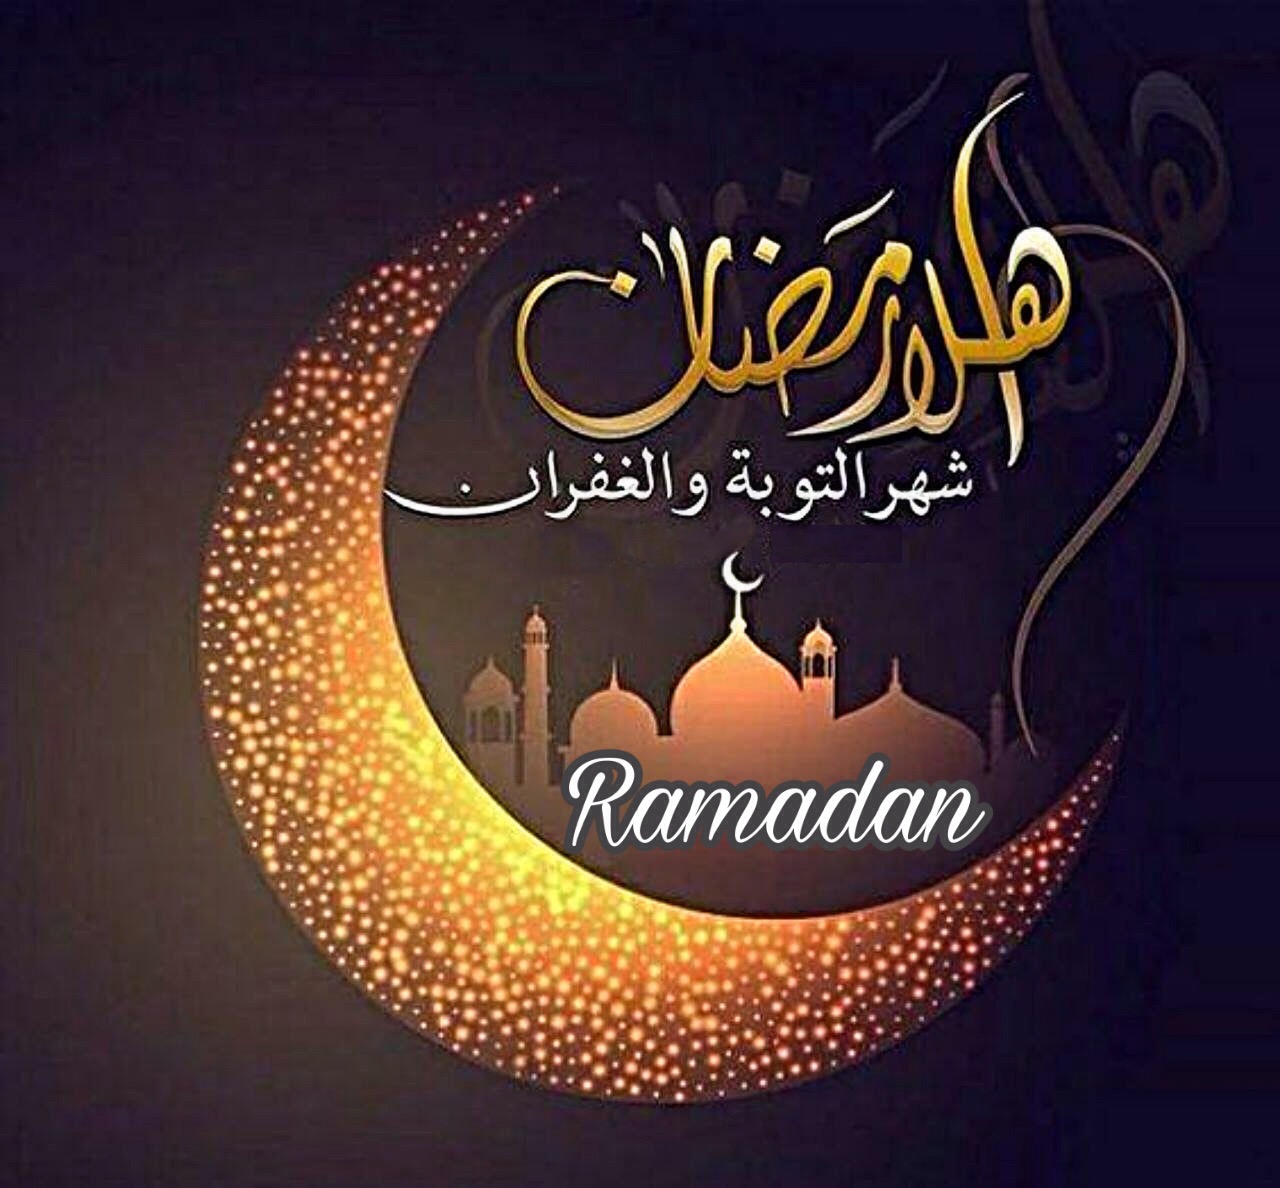 1715 5 خلفيات رمضان - فرحة الشهر الكريم في احدث خلفيات لرمضان 2020 محبه الخير